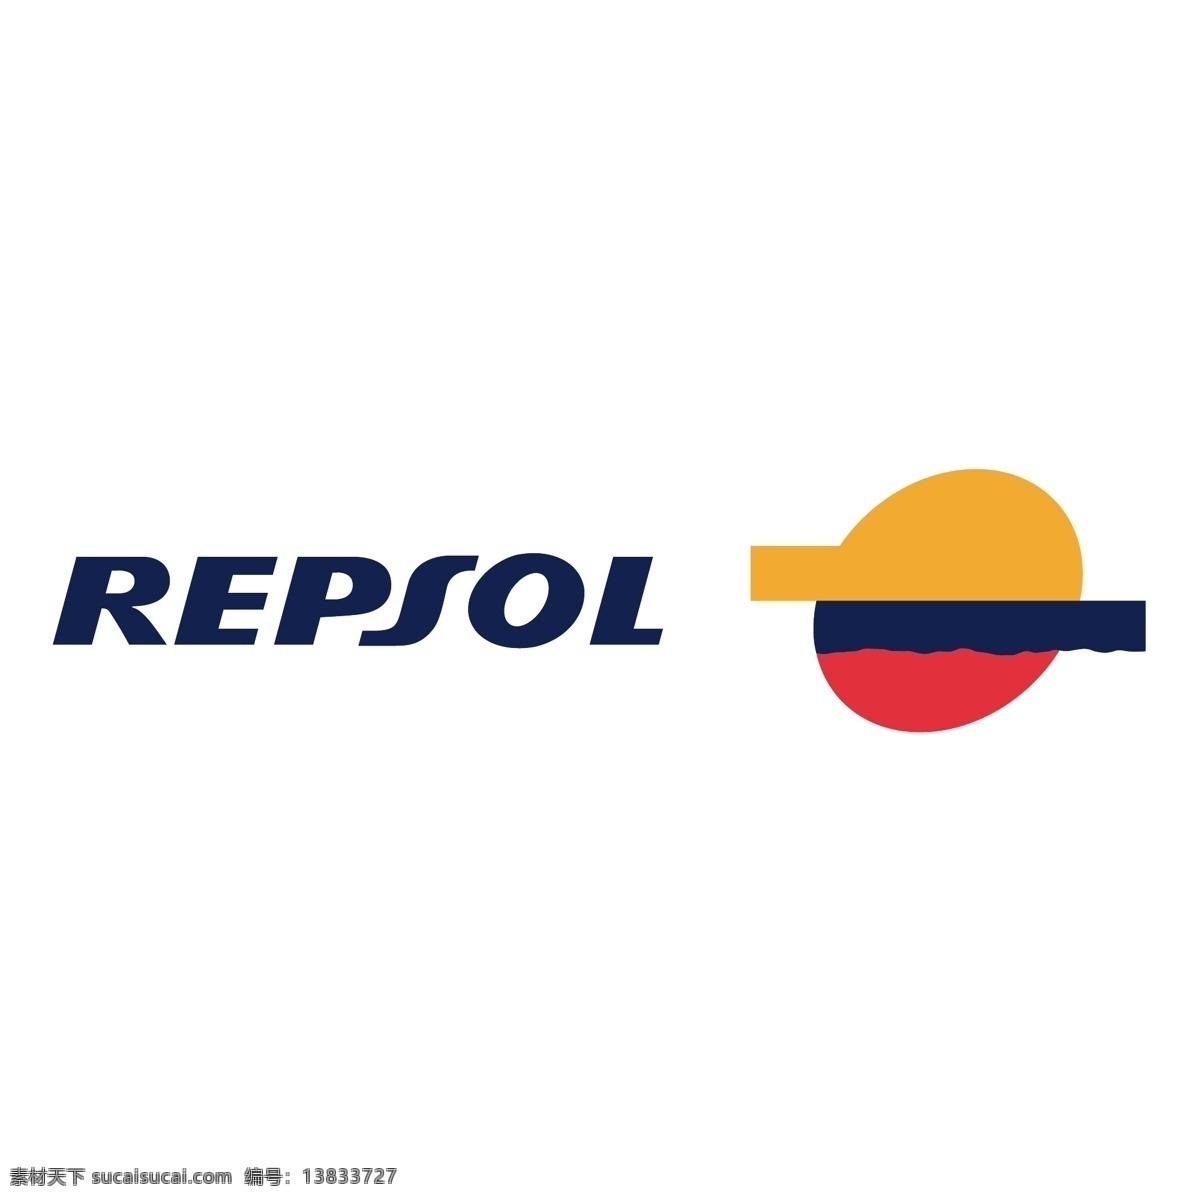 雷普索尔3 标志 repsol 雷普 索尔 矢量 logo 向量 ypf 矢量图 建筑家居